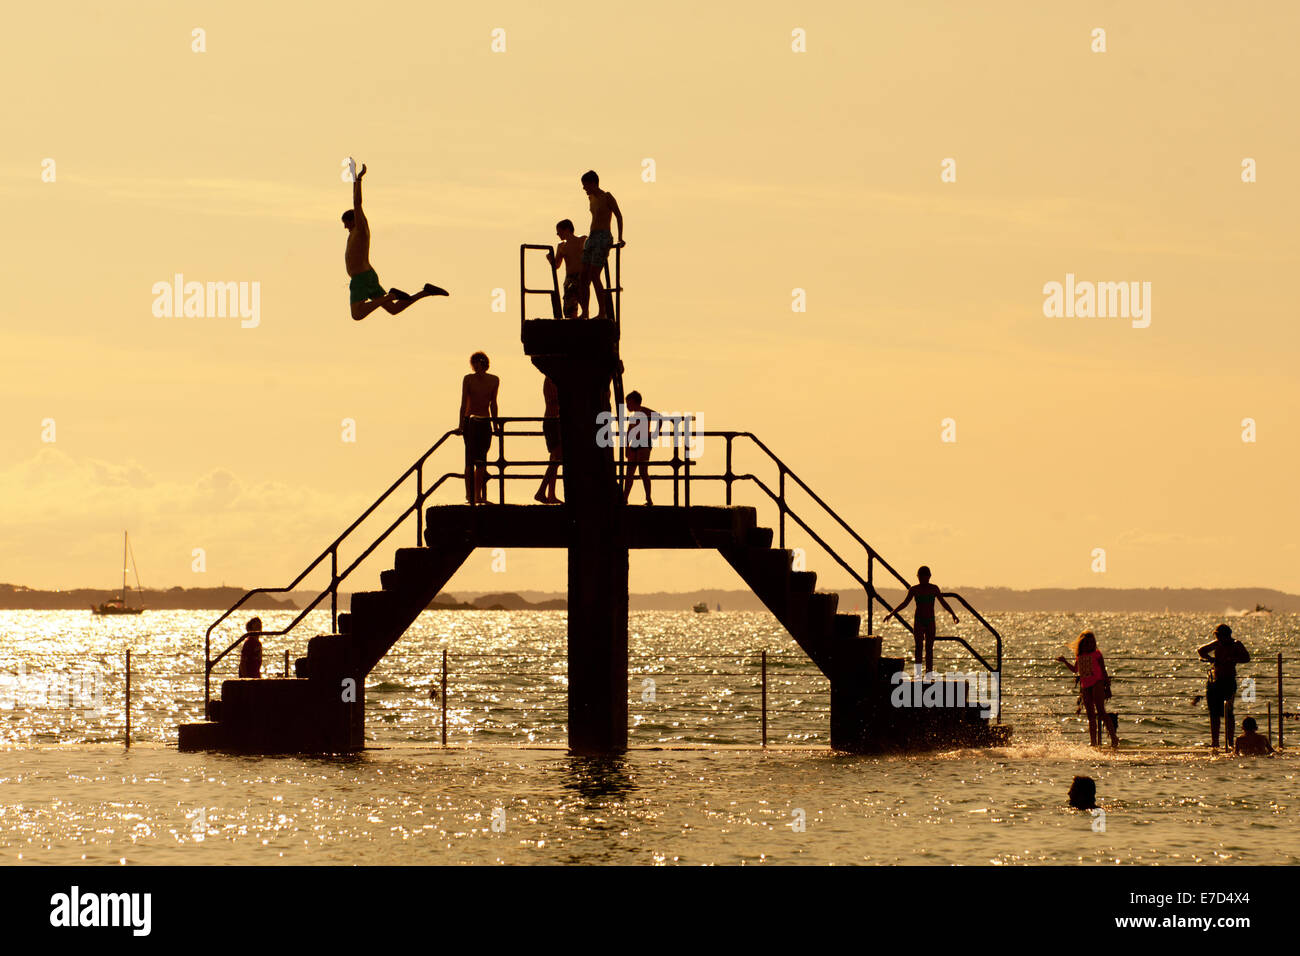 Plongée jeunes et d'un saut d'une zone de baignade, la mer plate-forme de plongée, st malo, Bretagne, France Banque D'Images